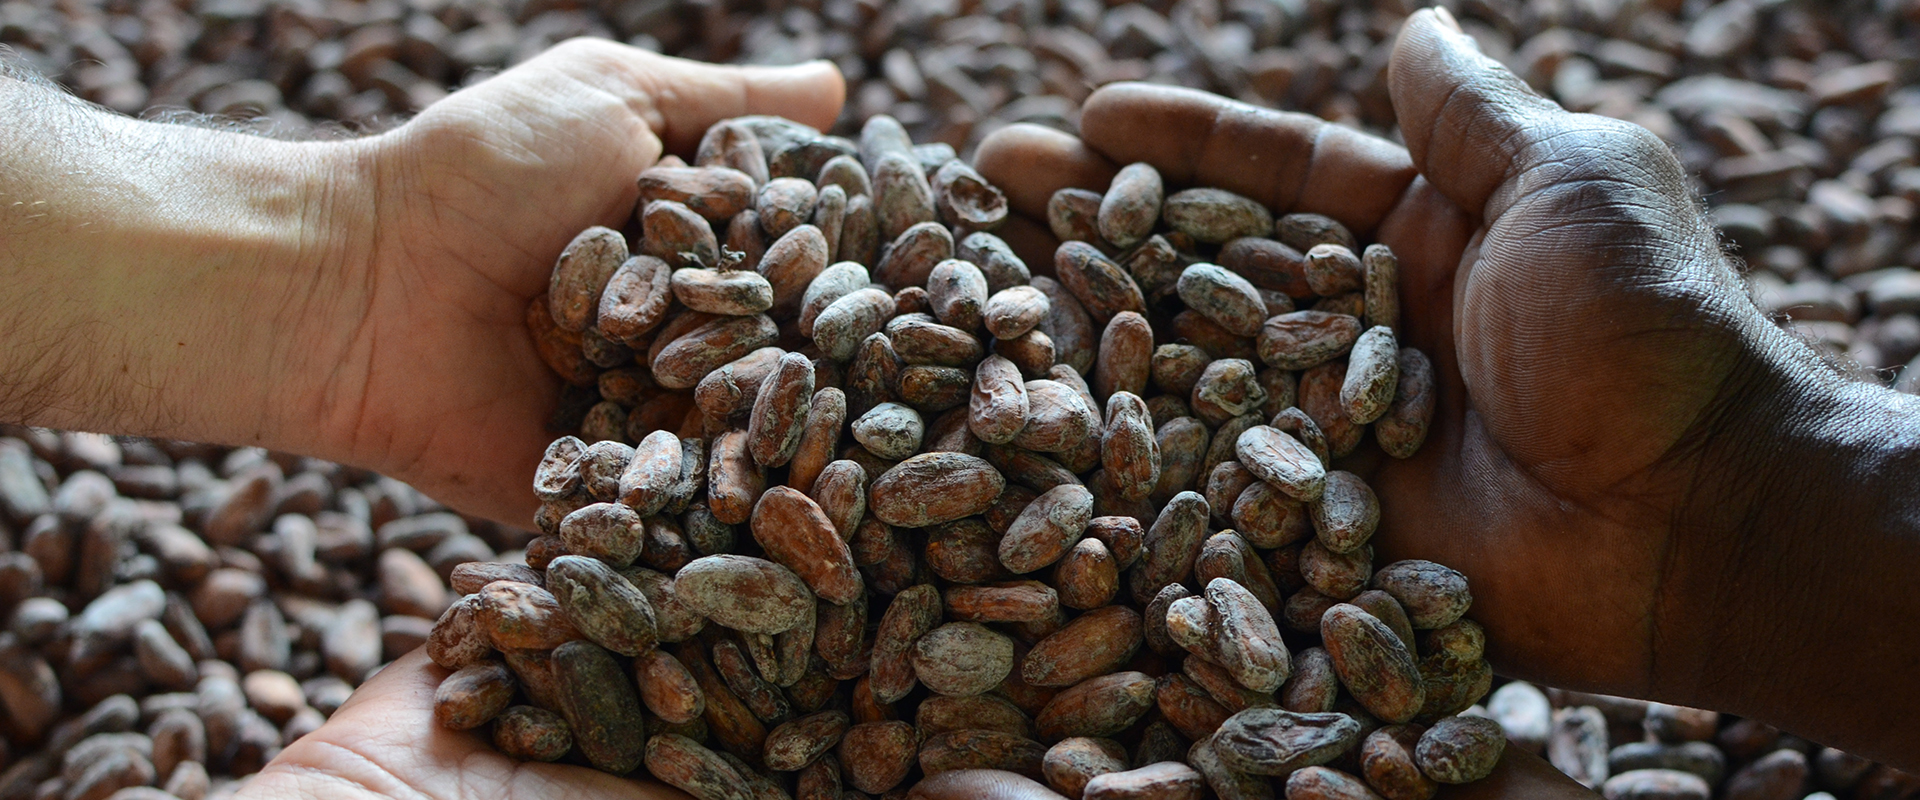 cacao corretto ecuador mani tese 2019